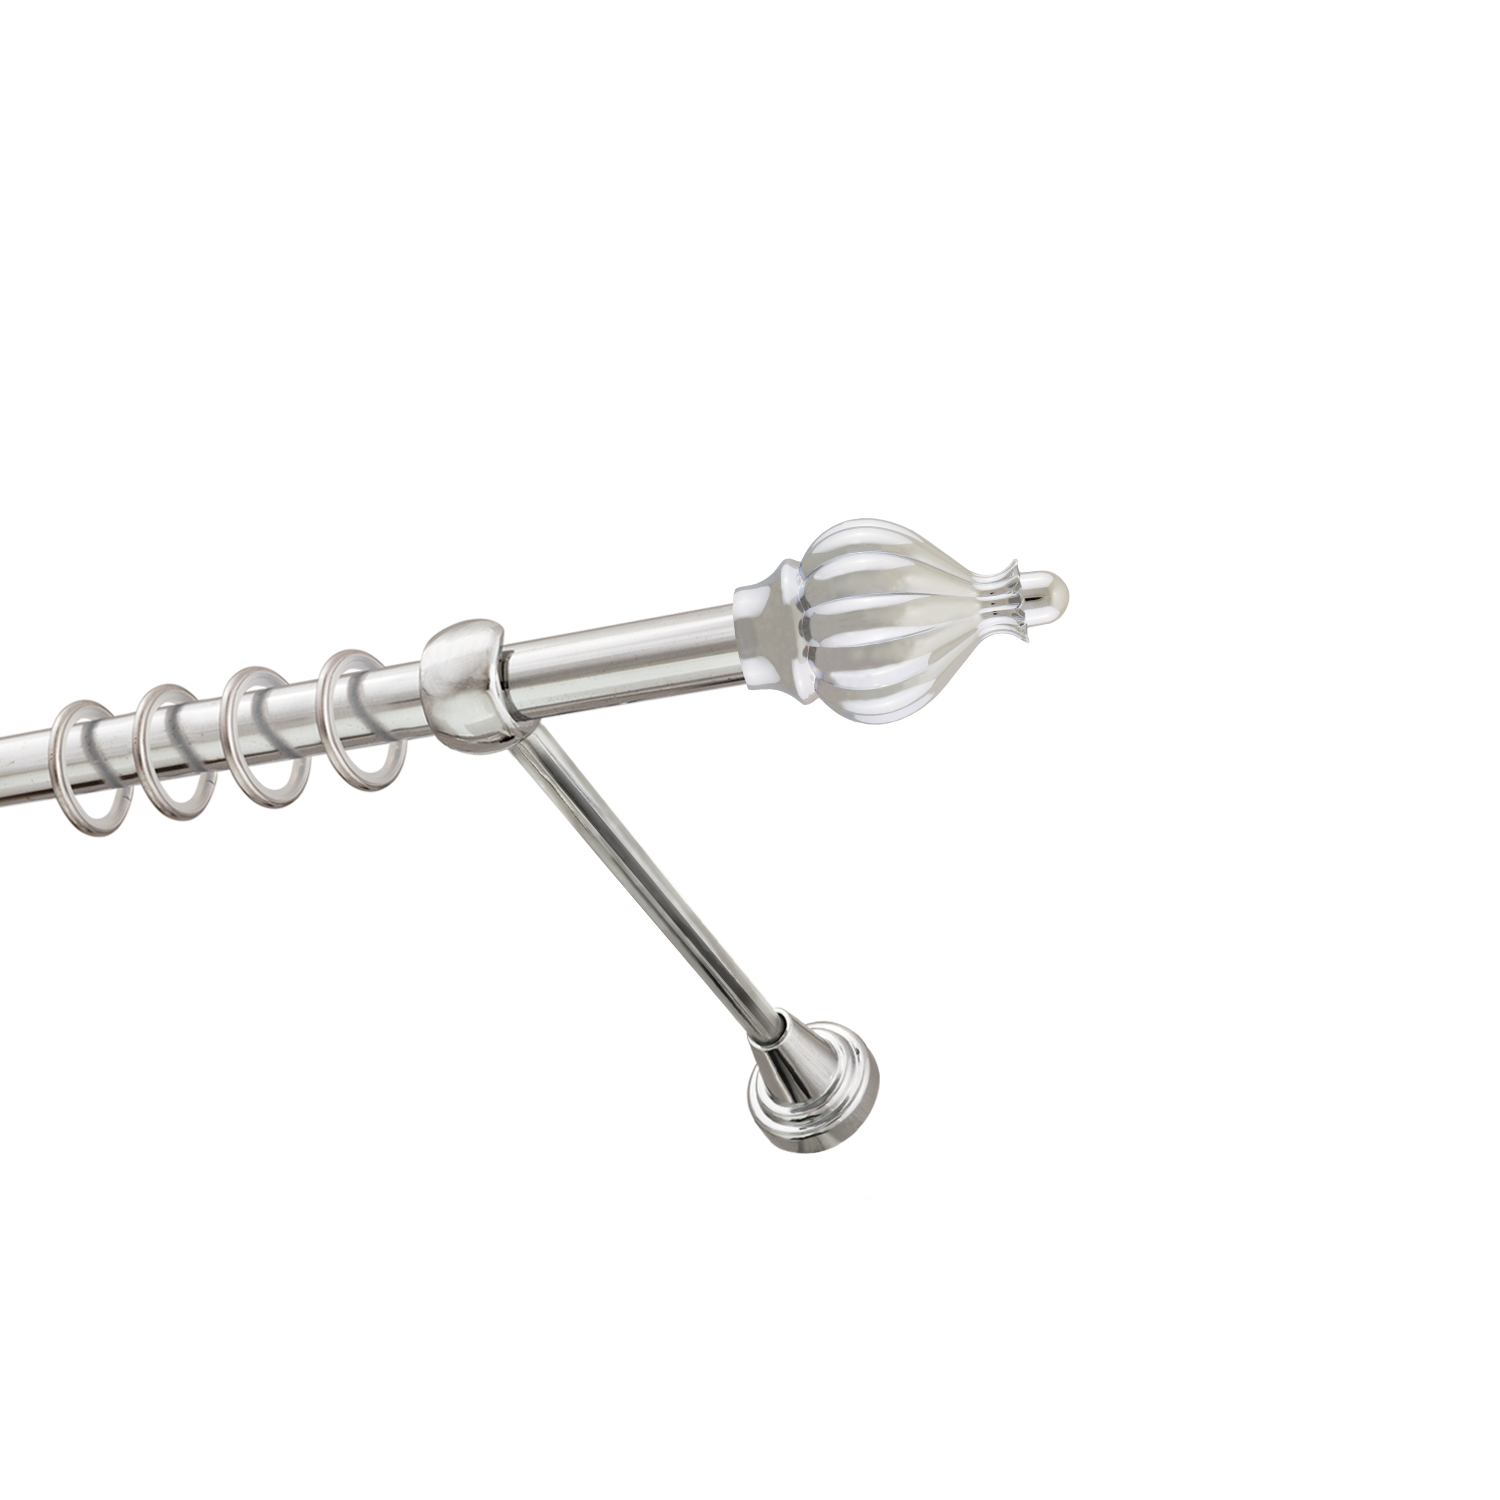 Металлический карниз для штор Афродита, однорядный 16 мм, серебро, гладкая штанга, длина 140 см - фото Wikidecor.ru